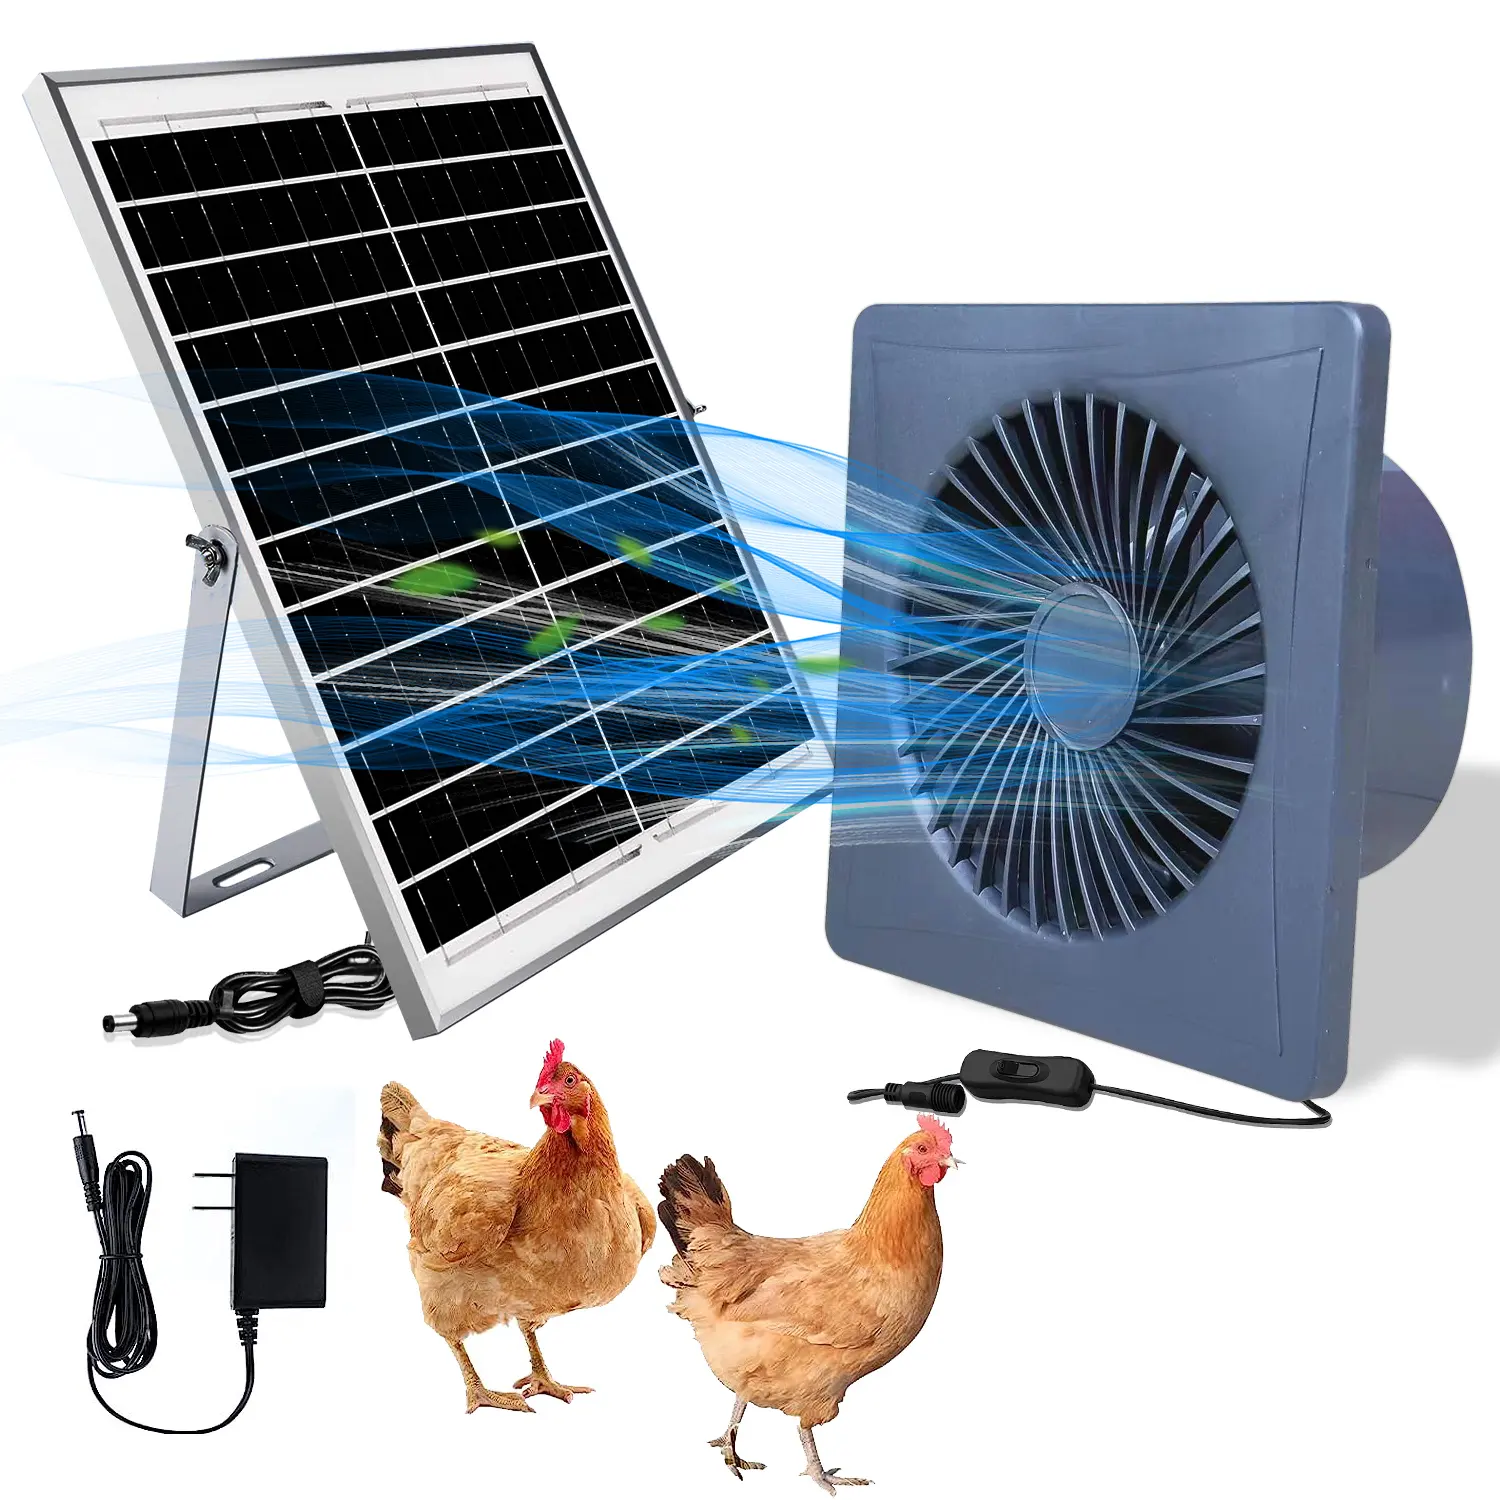 Ventilateur d'extraction solaire 6 pouces DC 12V ventilateur de ventilation domestique hotte aspirante cuisine hotte aspirante silencieuse ventilateur de refroidissement